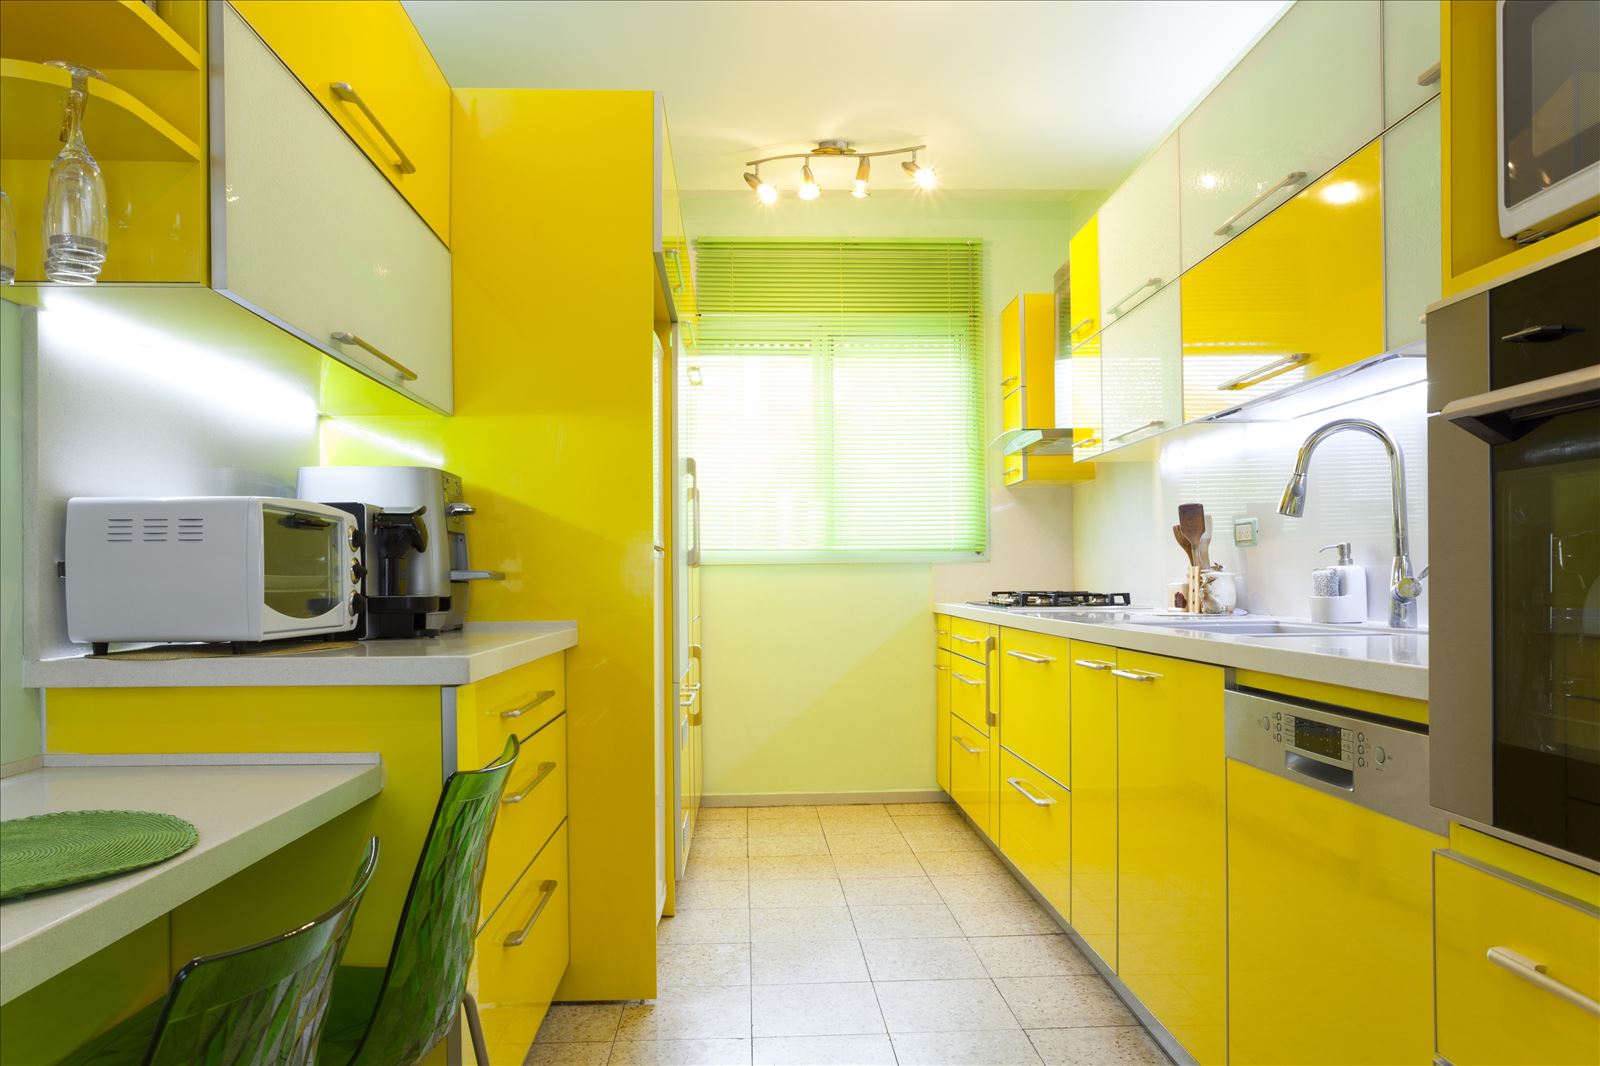 Groen keukeninterieur (19 foto's): moderne ontwerpopties